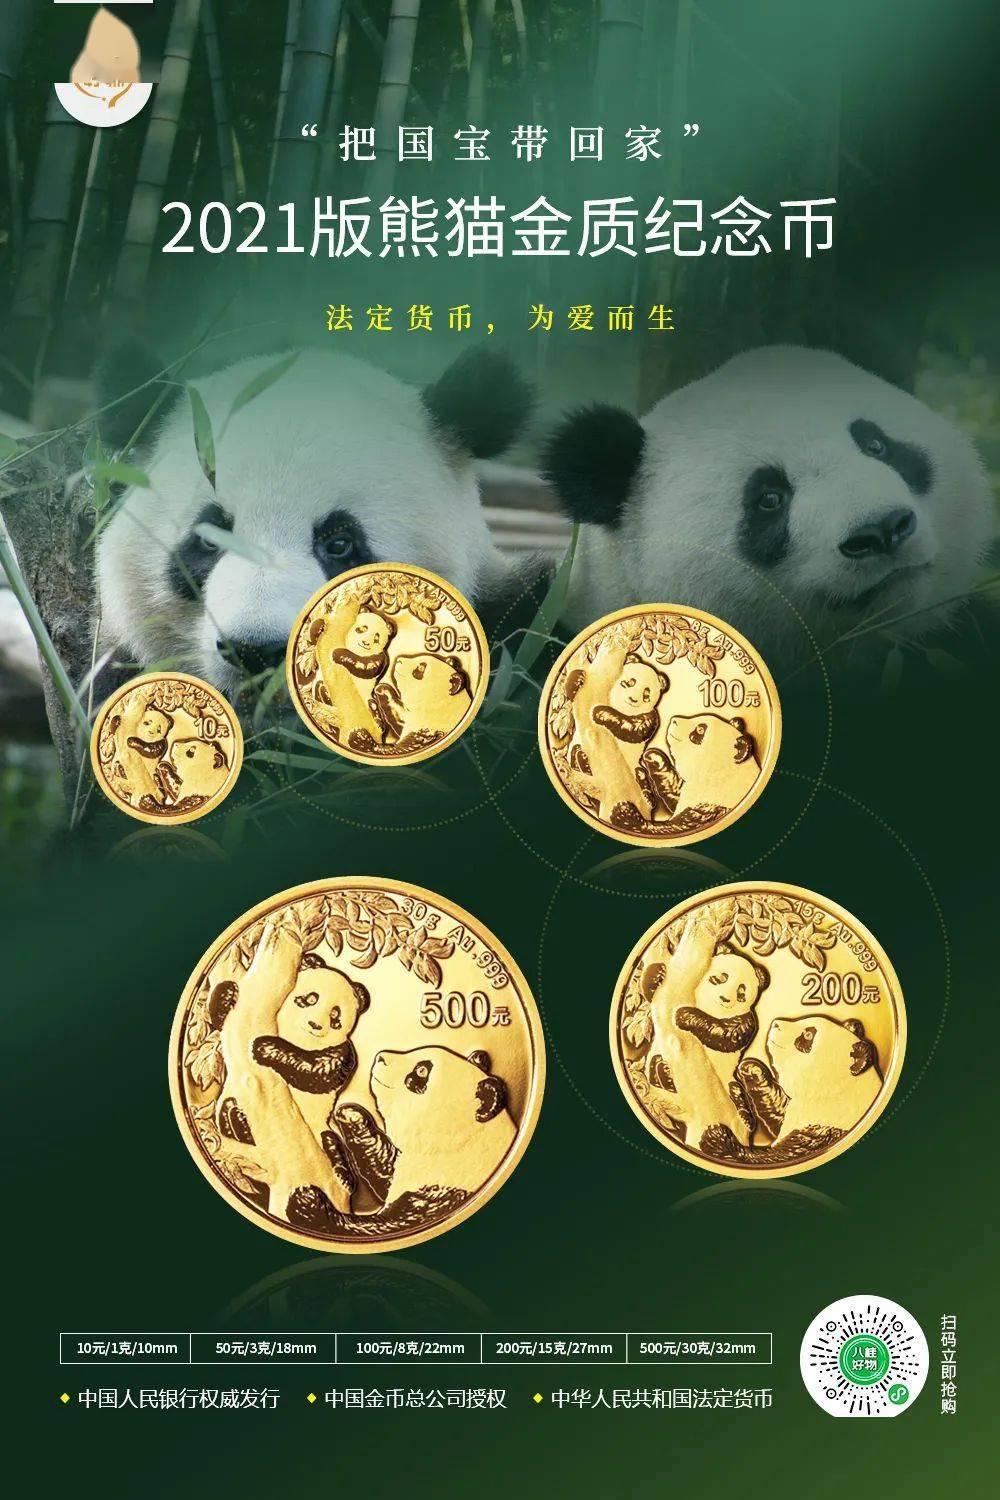 【热门收藏】2021年熊猫金质纪念币(普制币)单枚预售中!